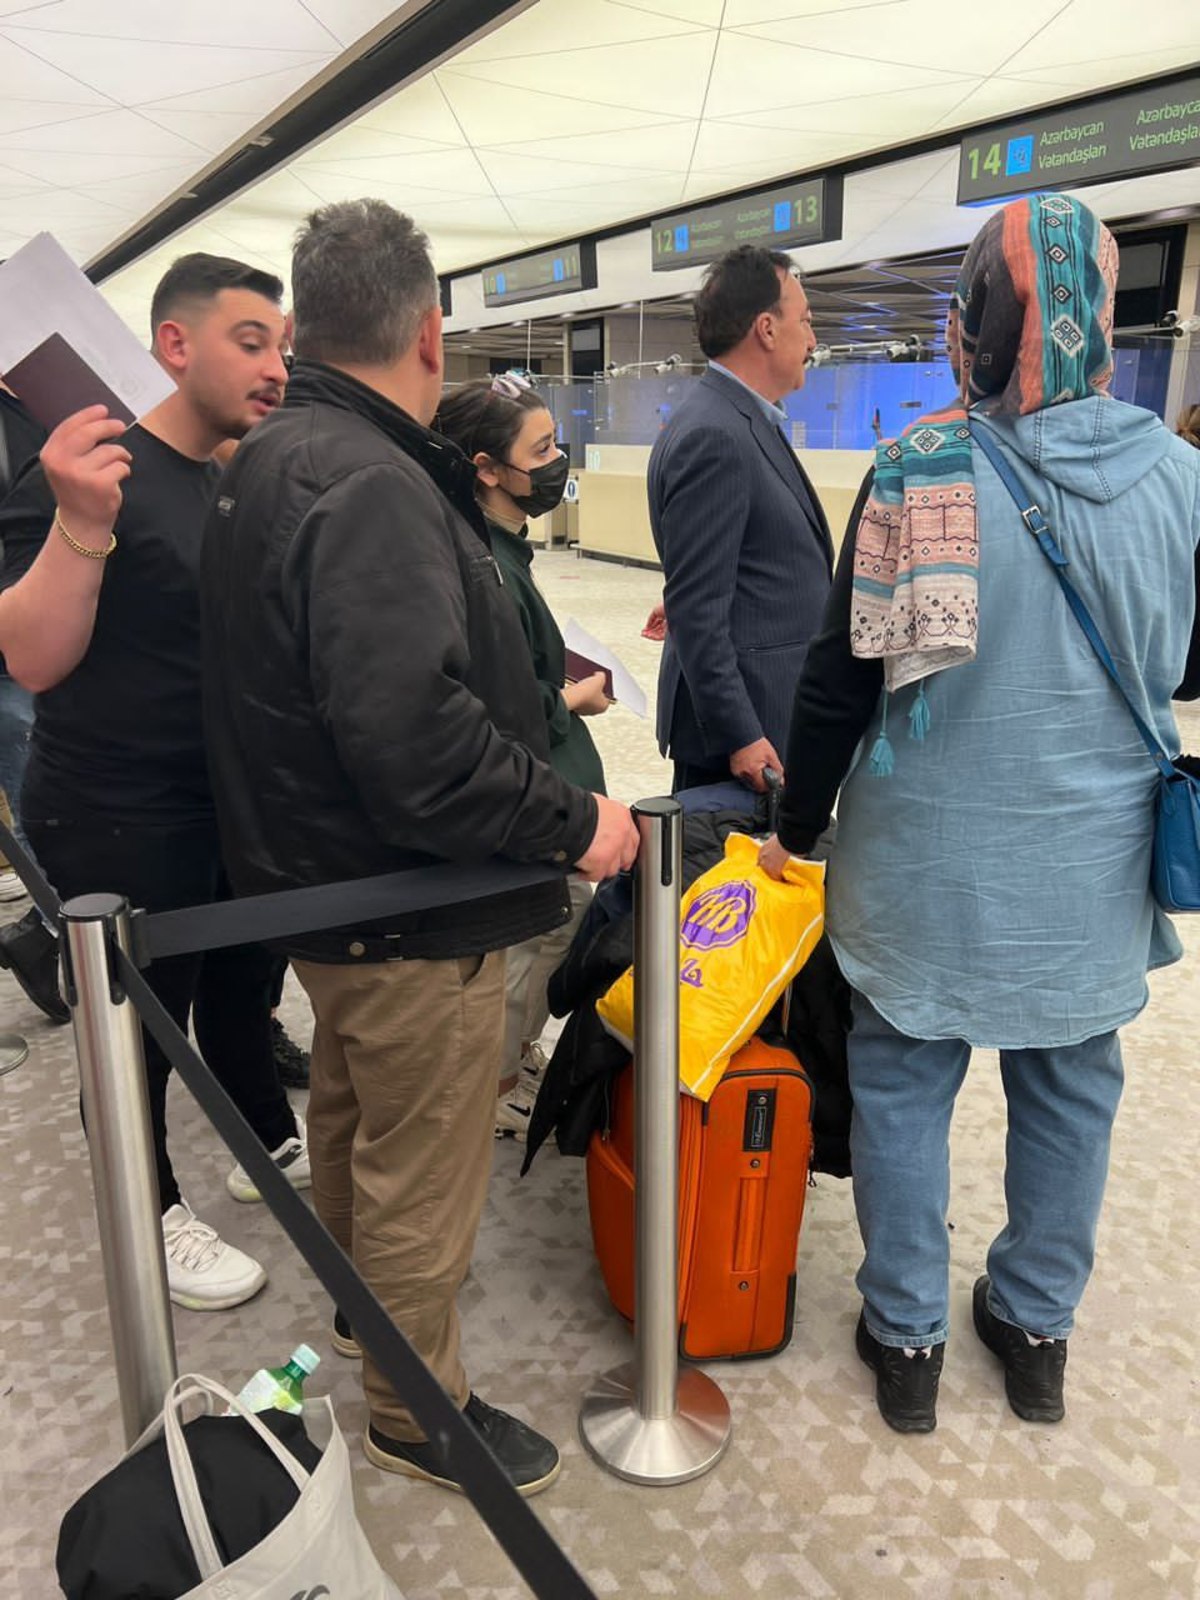 تضییع حقوق و تحقیر مسافران ایرانی در فرودگاه باکو/ آقایان مسئول چشم و دلتان روشن!!